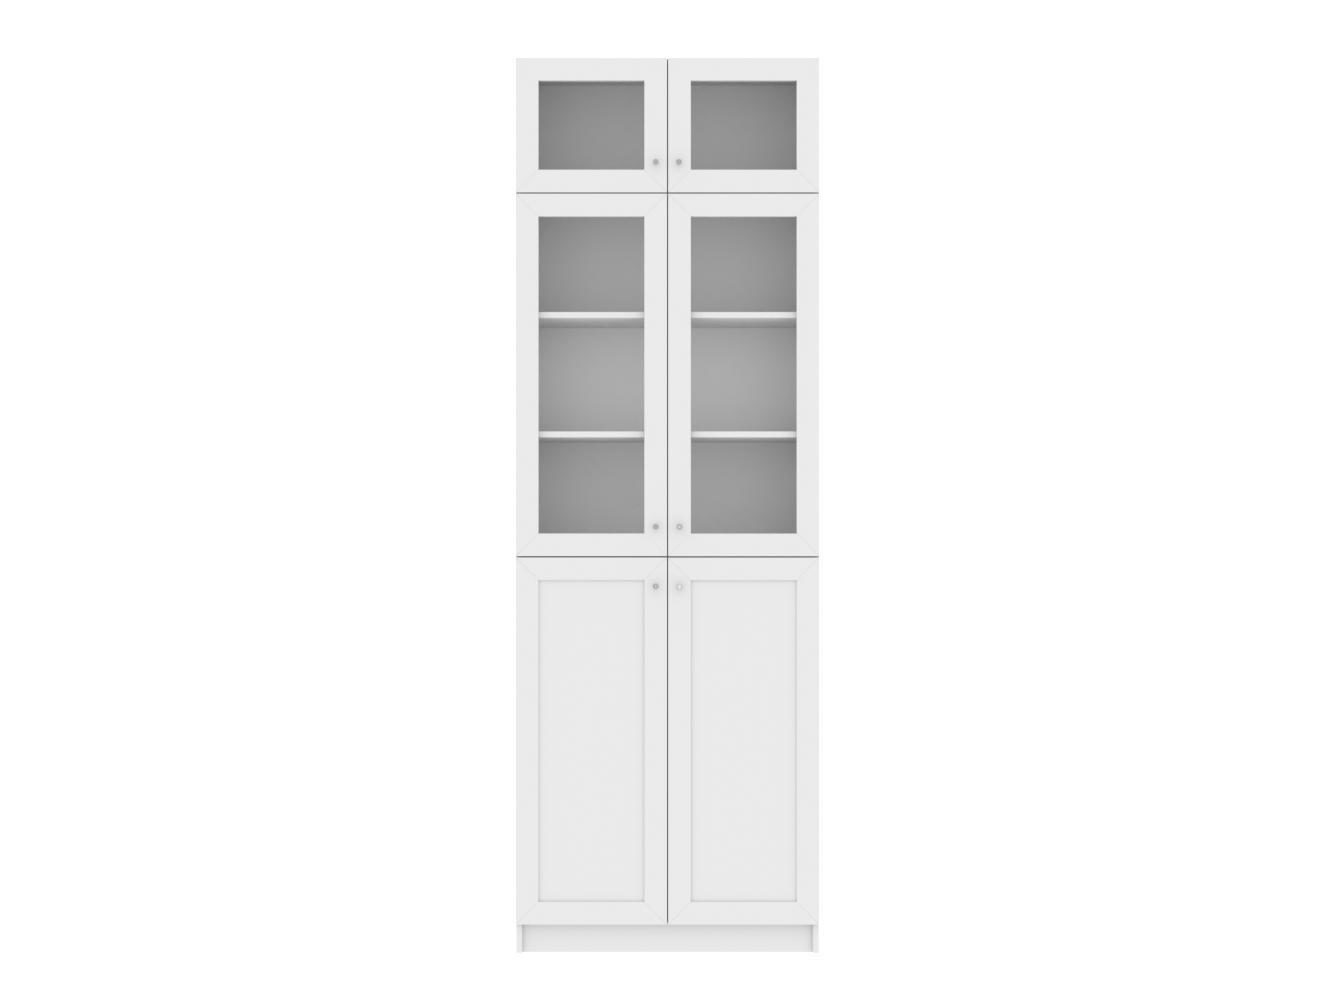 Изображение товара Книжный шкаф Билли 352 white ИКЕА (IKEA), 80x30x237 см на сайте adeta.ru